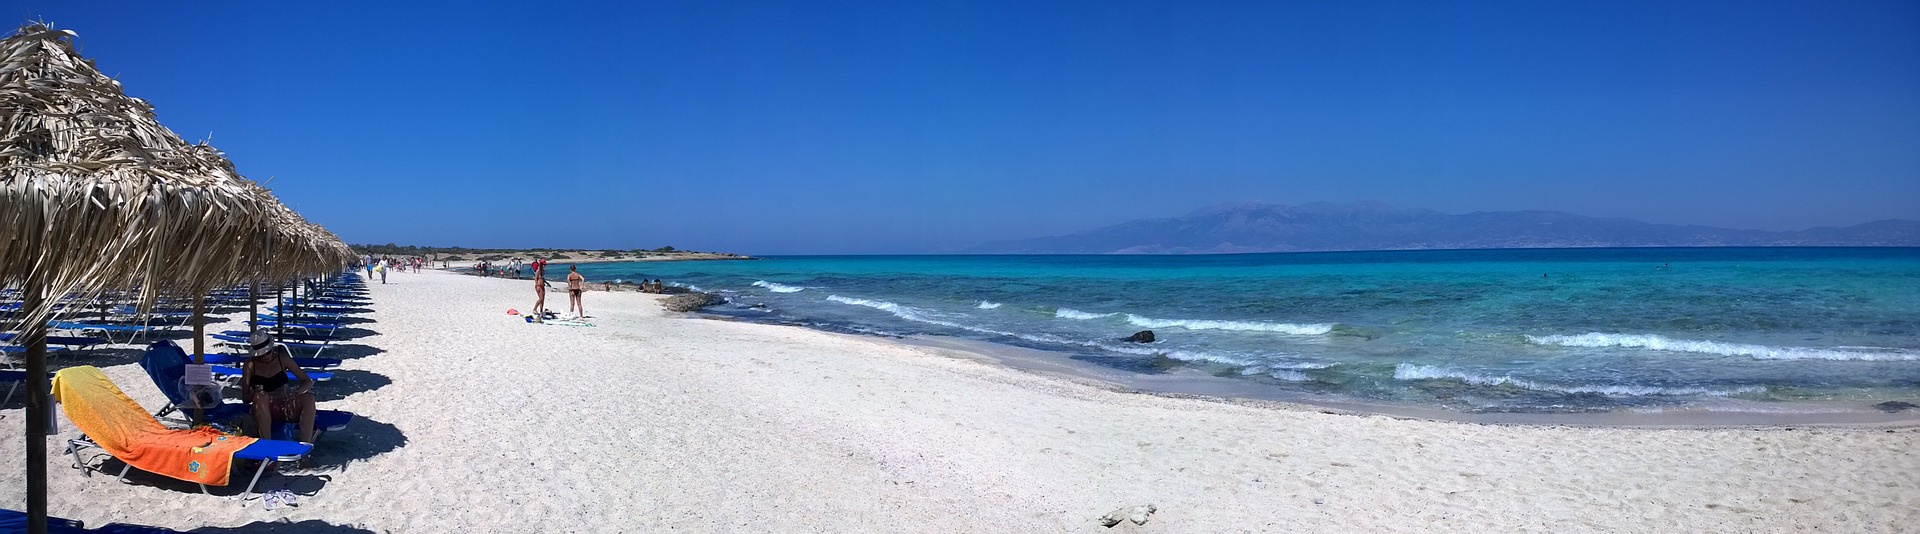 Wo liegt der beste Strand auf Kreta und wo sind schöne Wanderwege